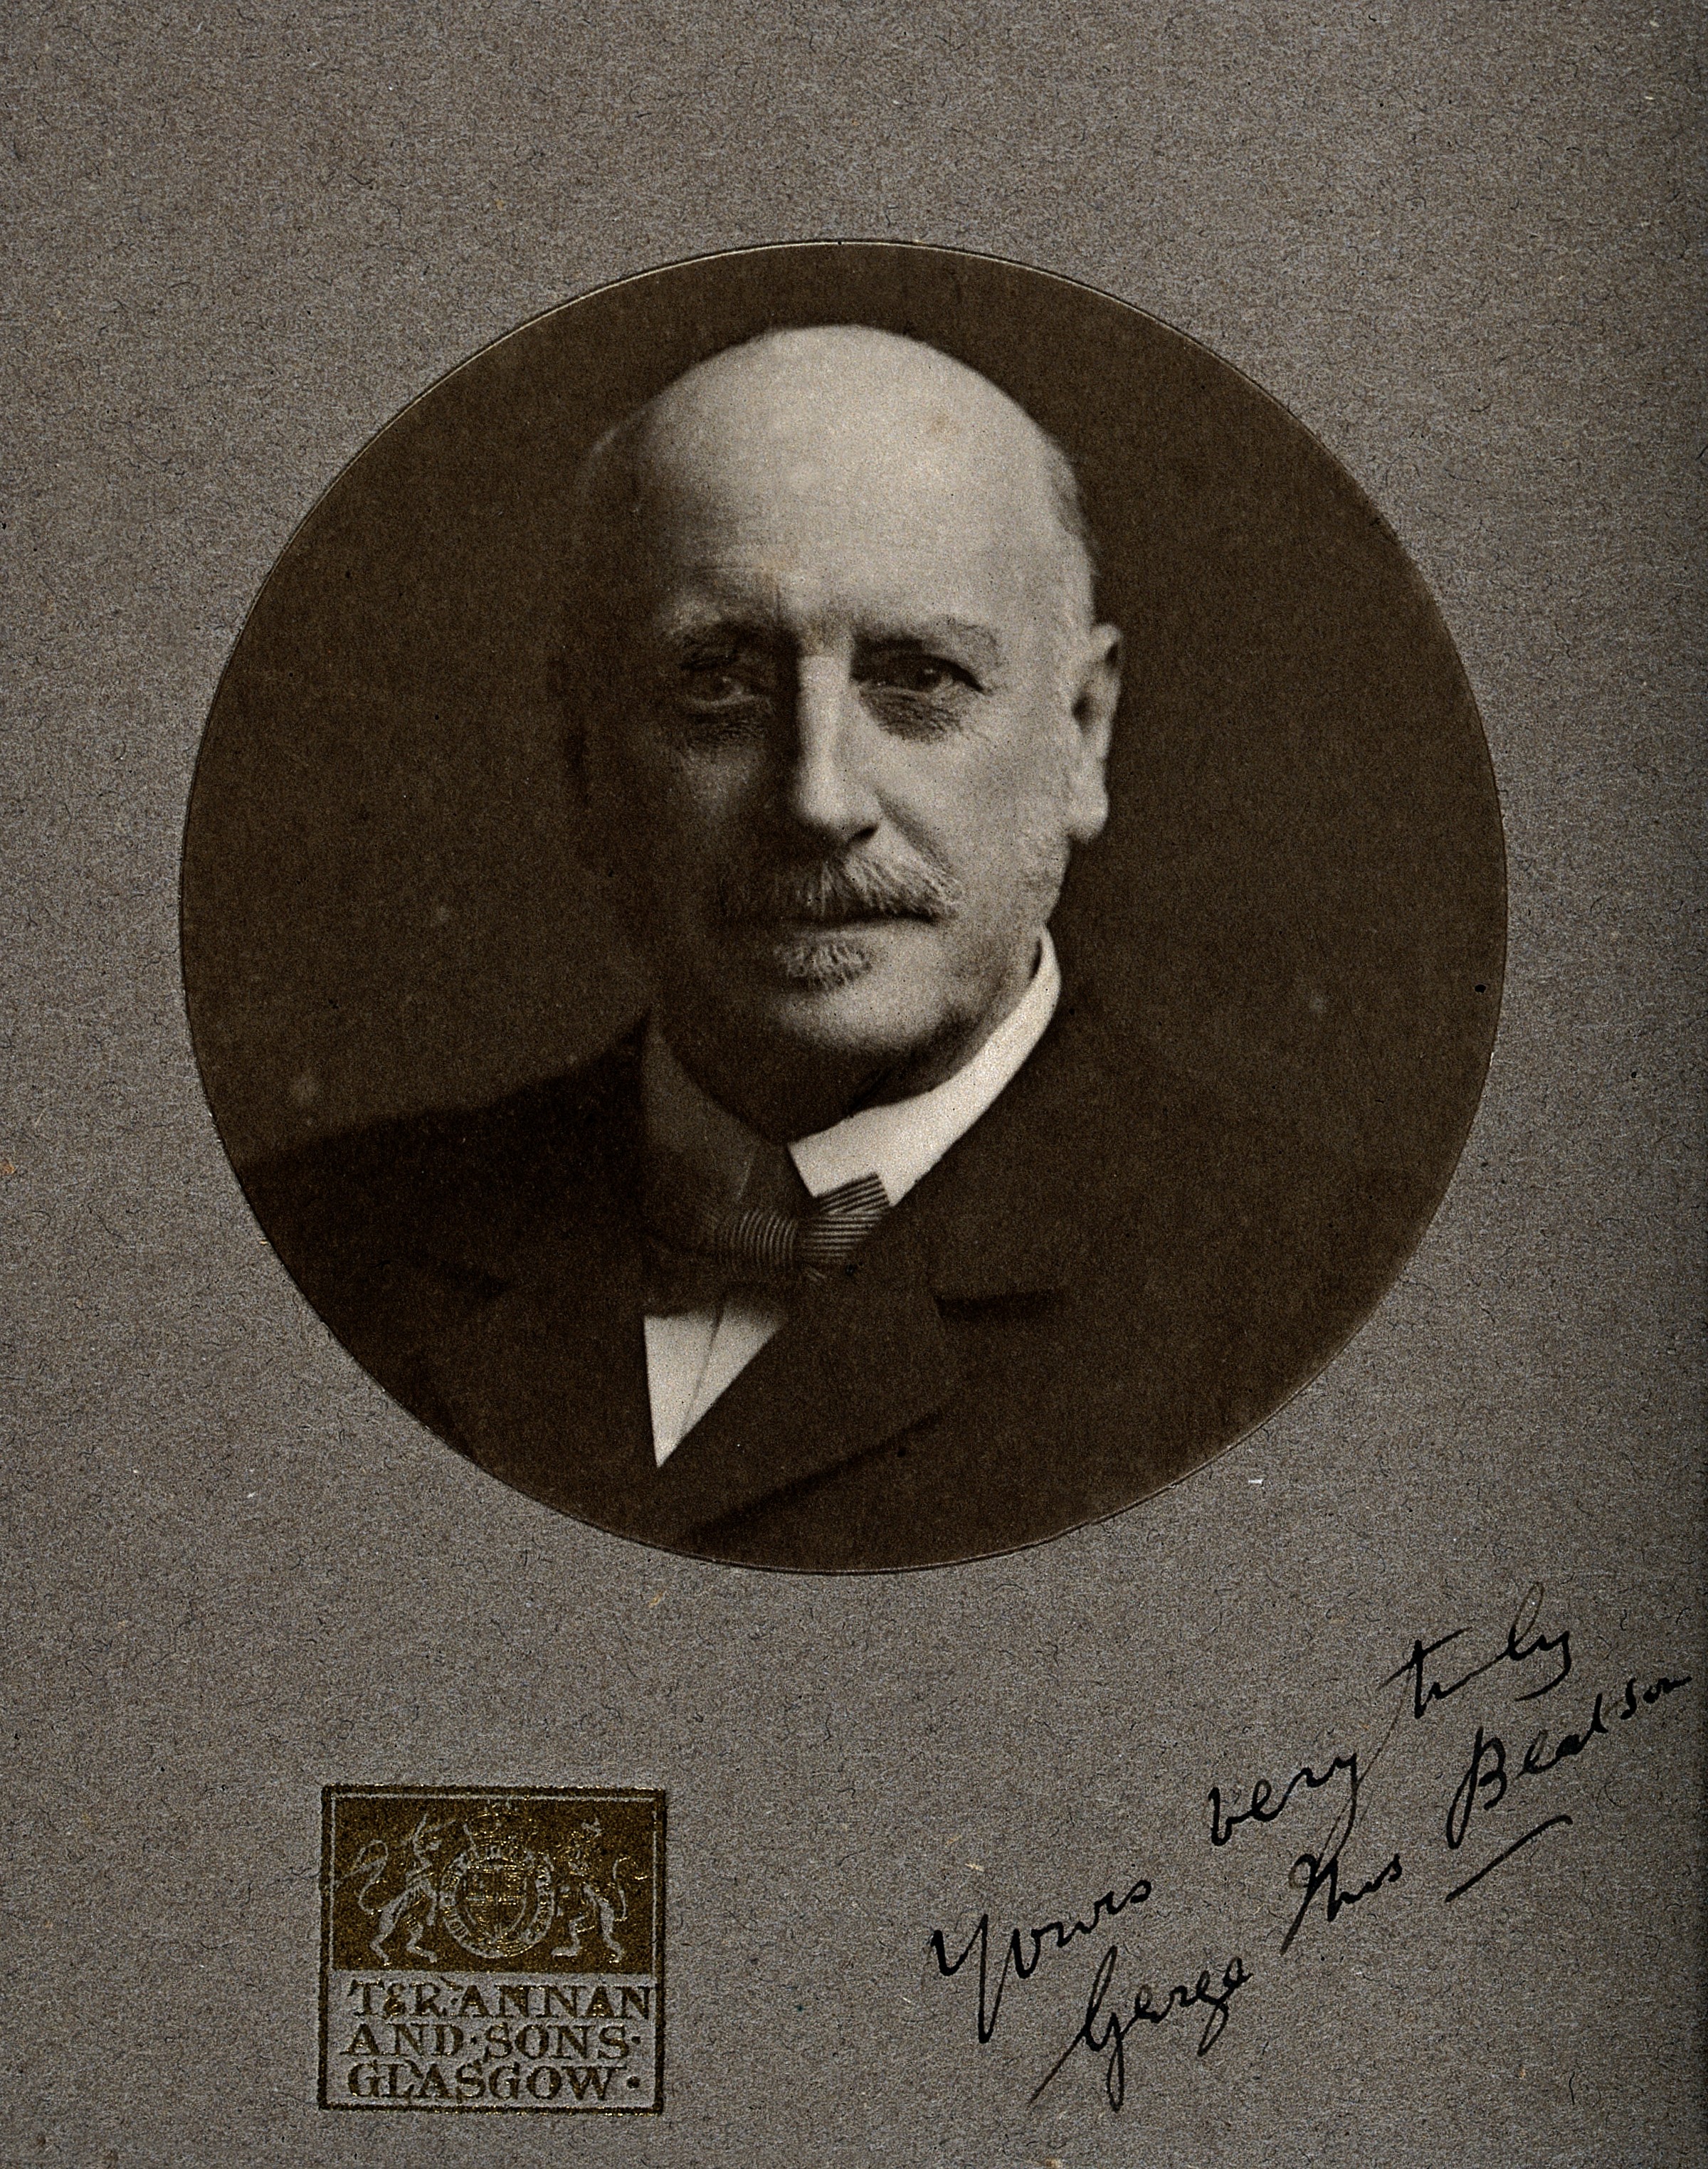 Sir George Thomas Beatson. Photograph by T. & R. Annan & Son Wellcome V0026013